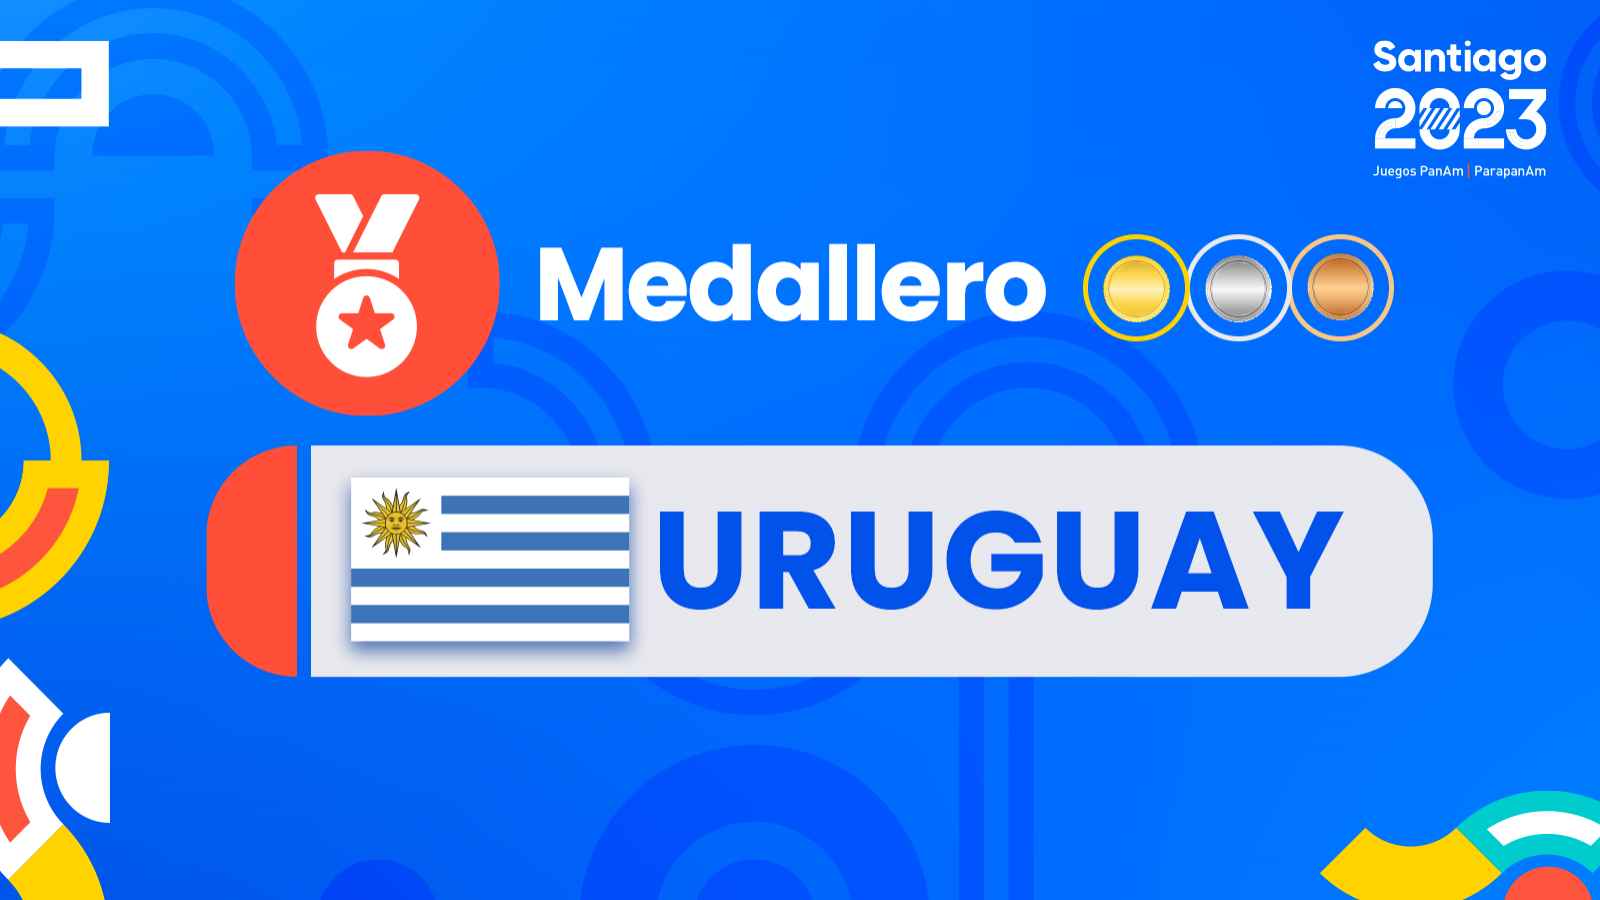 Medallas y medallero Uruguay juegos panamericanos Santiago 2023.